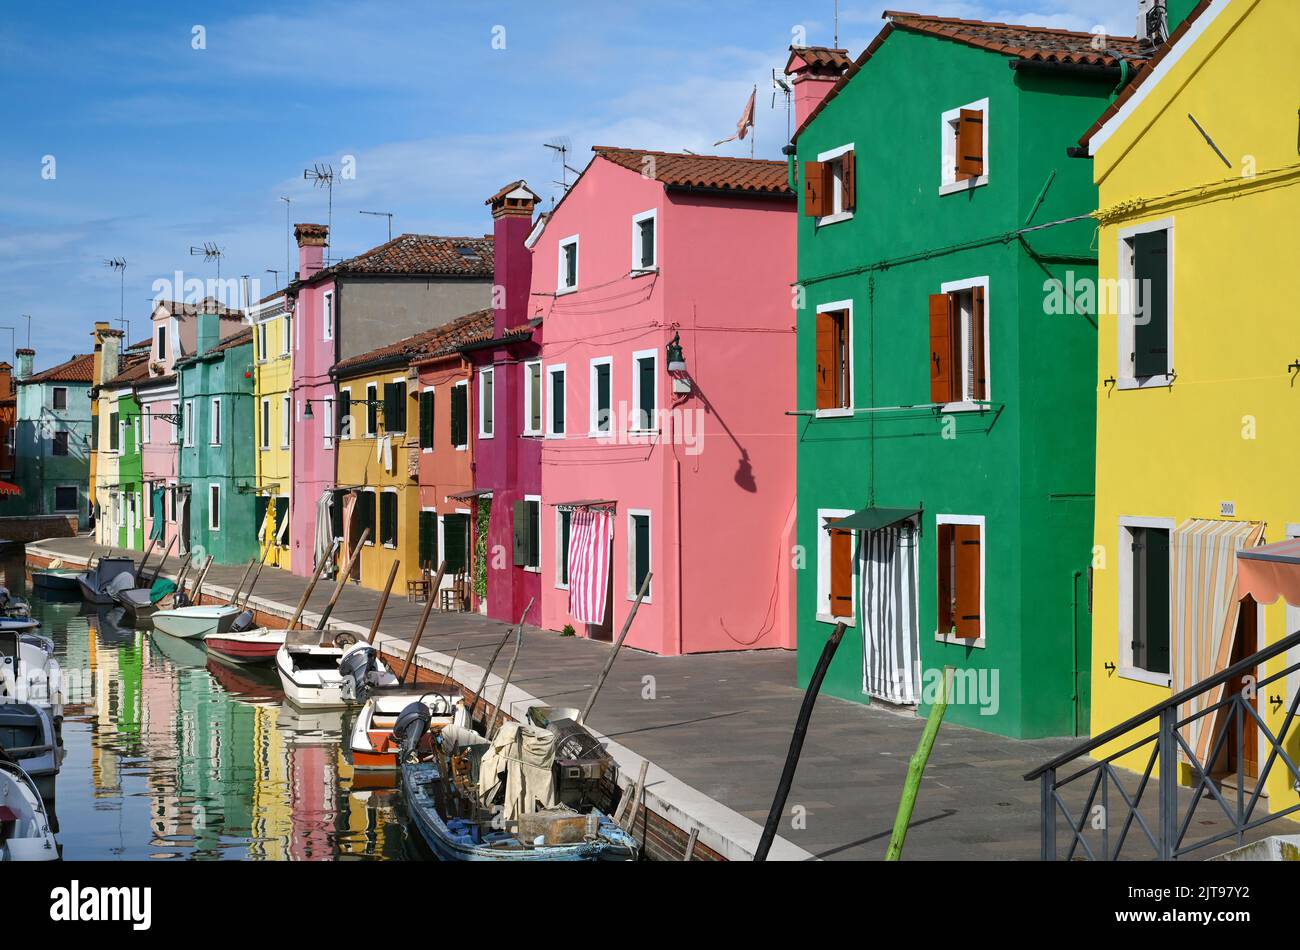 Le barche galleggiano sulle calme acque del canale vicino a case multicolore contro il cielo blu nelle giornate di sole sulla strada dell'Isola di Burano in Italia Foto Stock